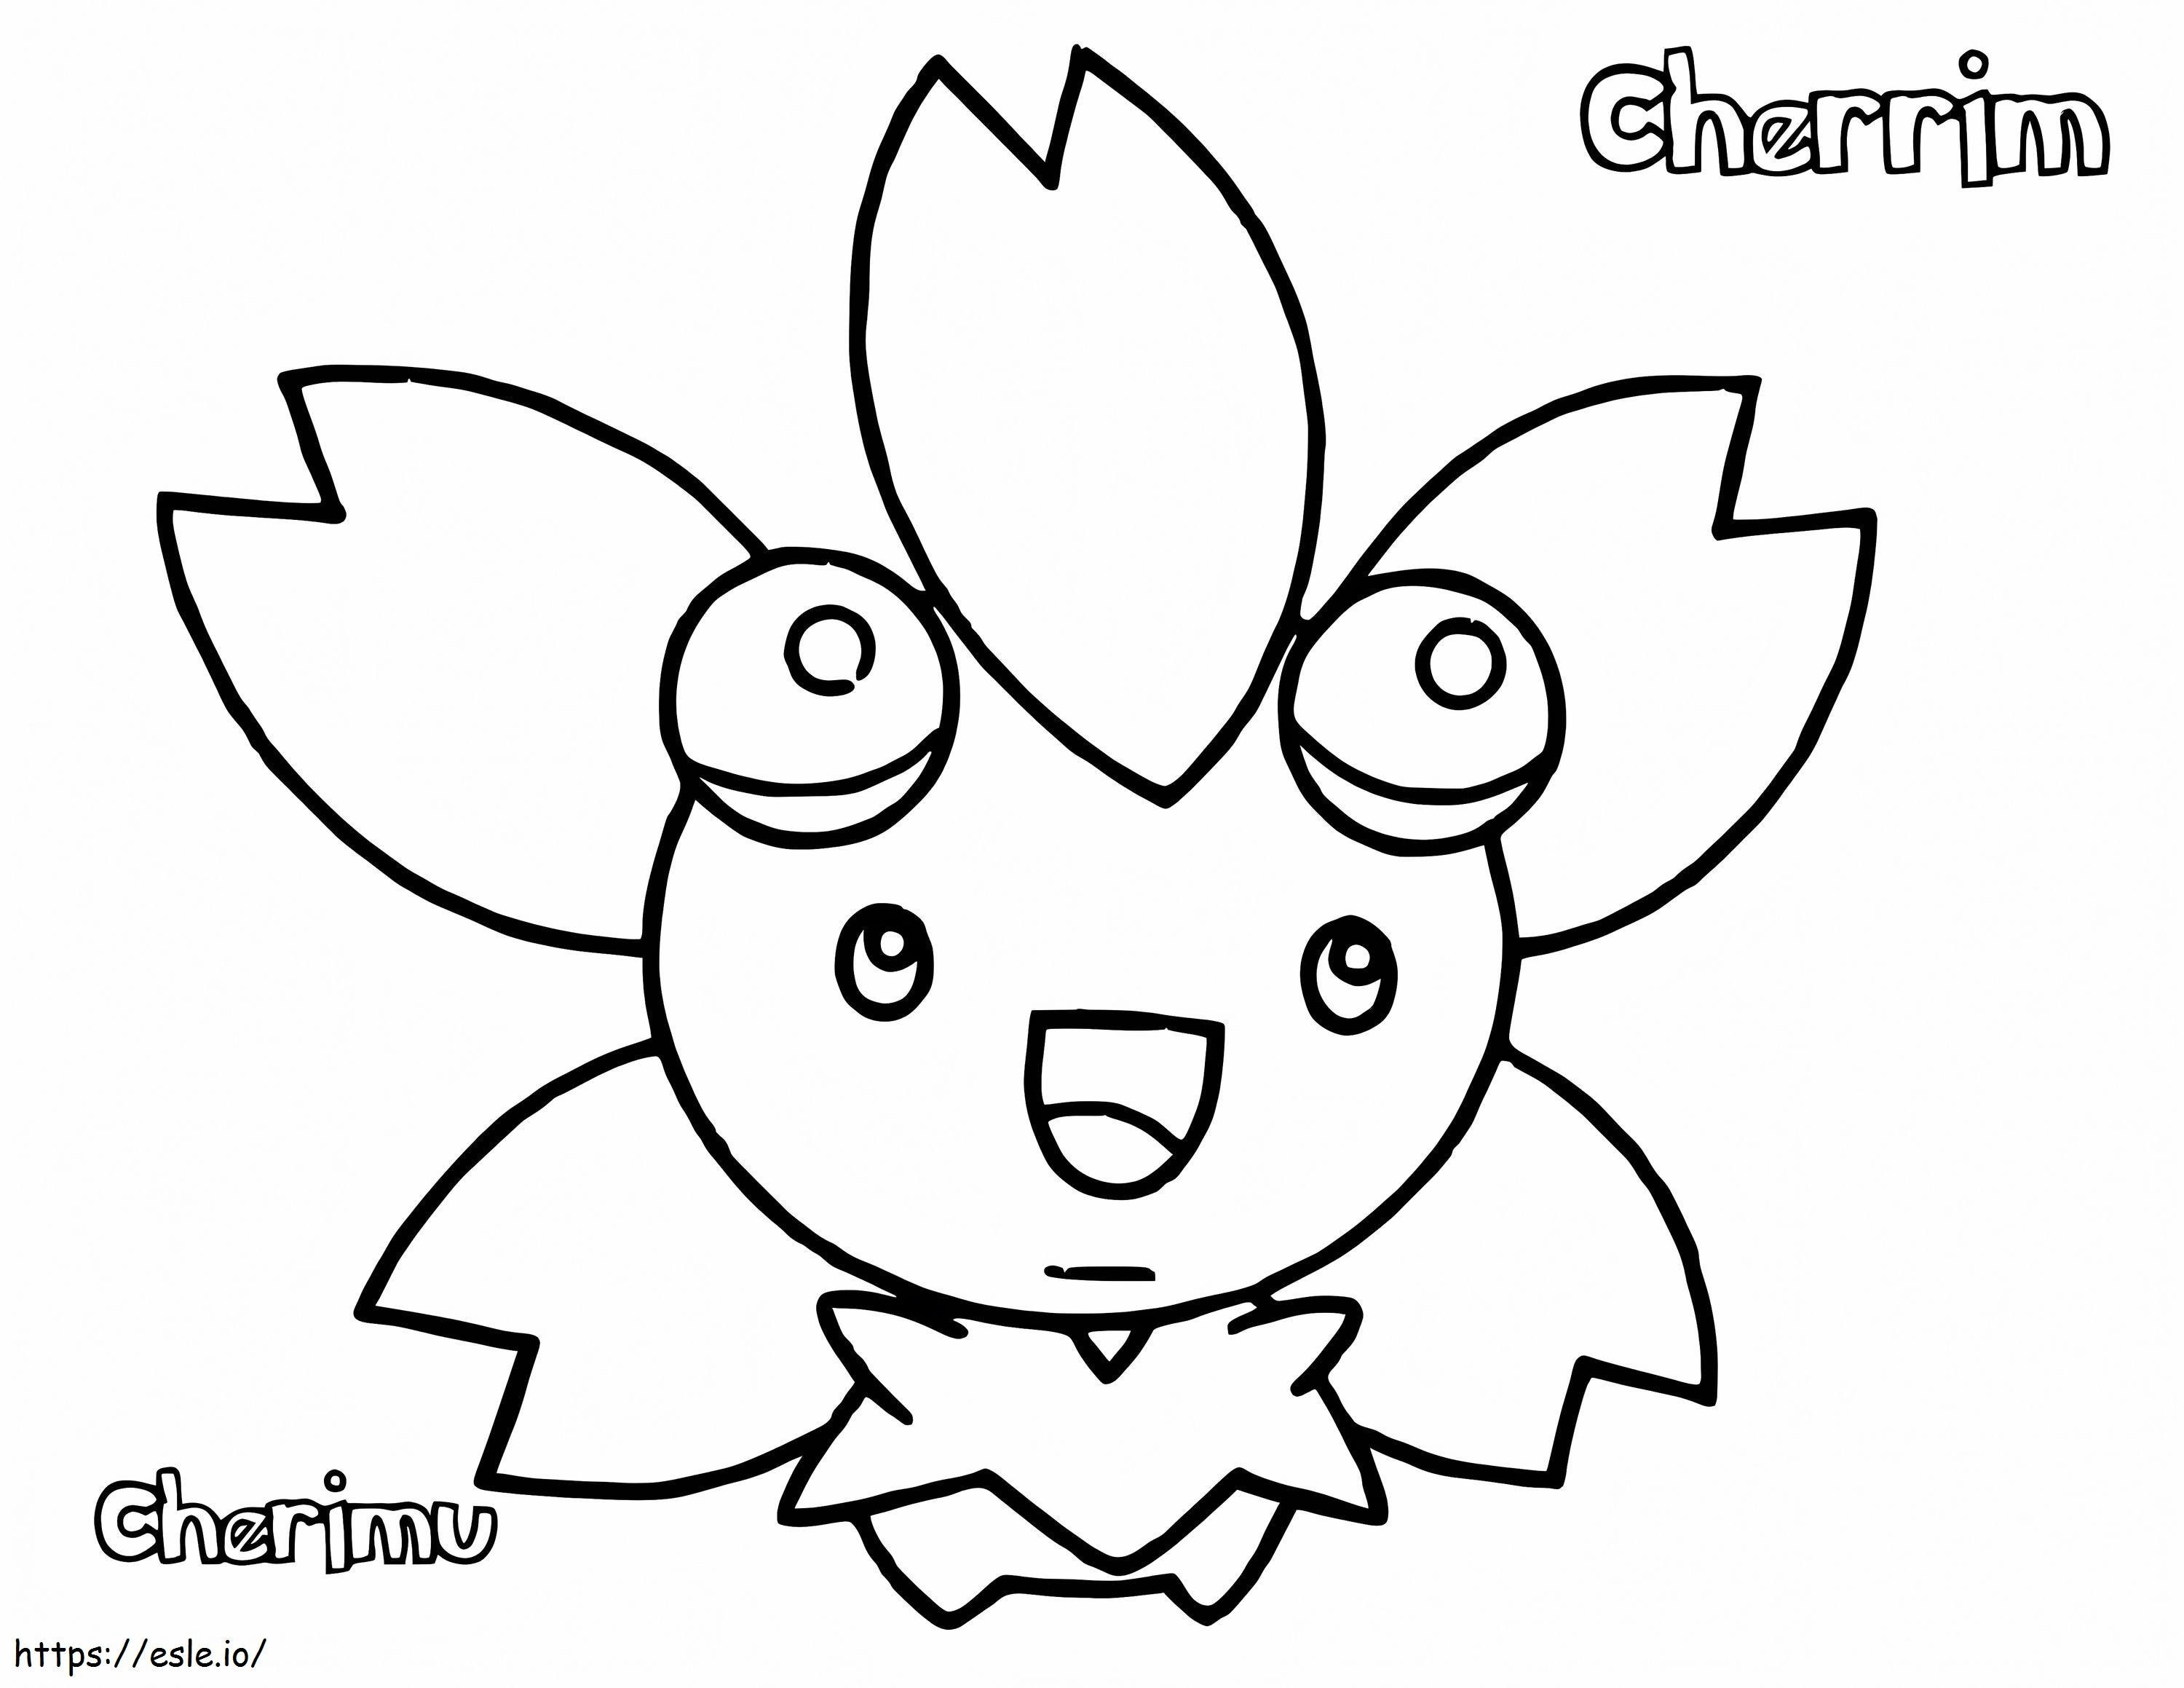 Cherrim Pokemon 2 Gambar Mewarnai